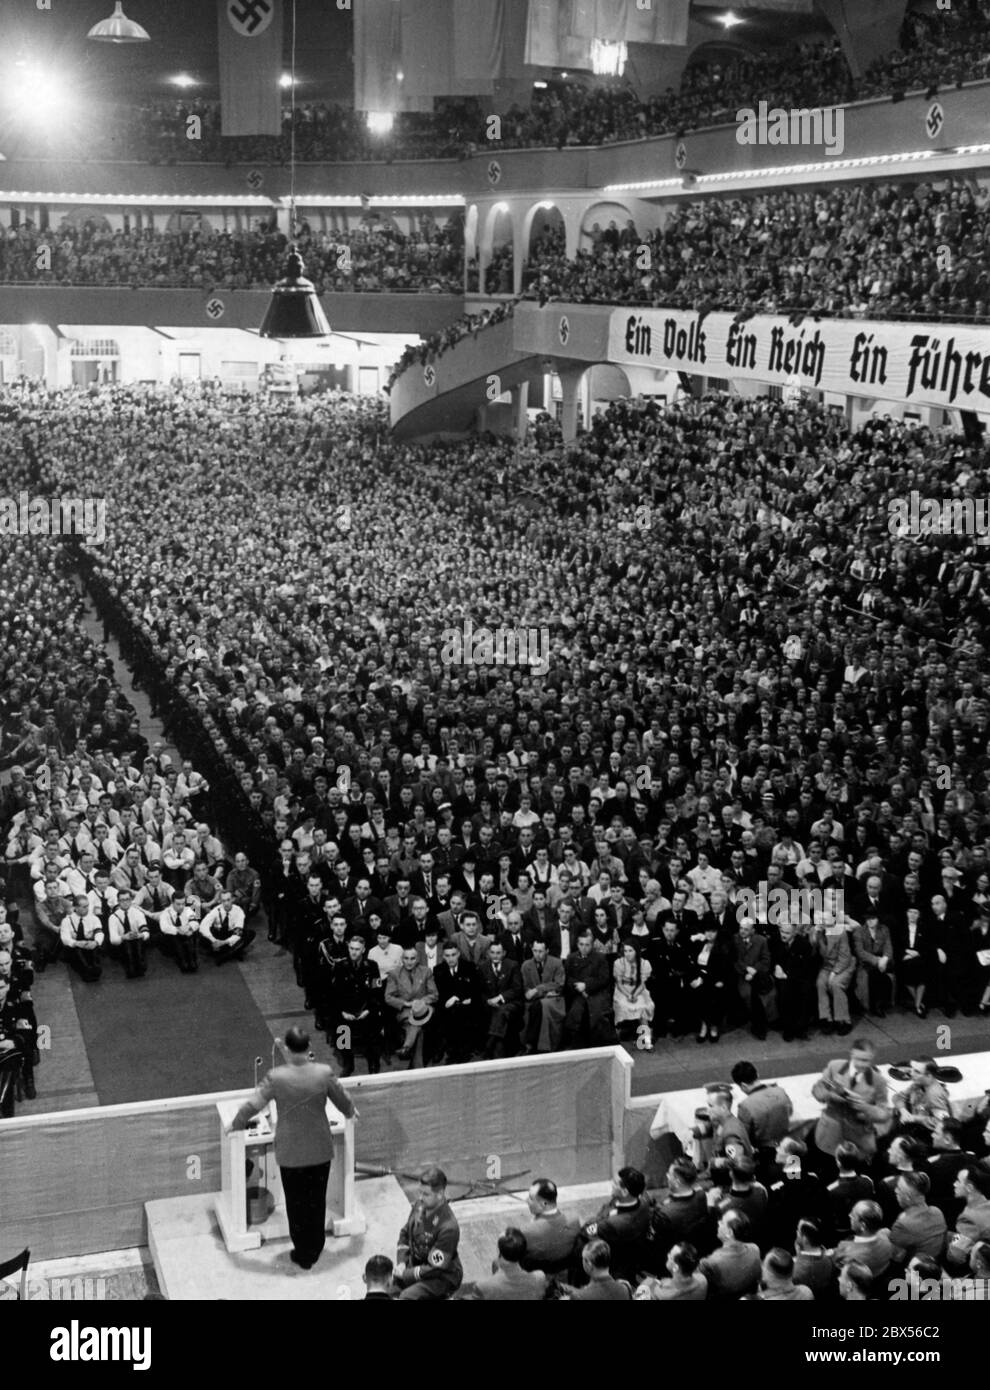 Blick auf das Publikum bei einer Rede Adolf Hitlers im Berliner Sportpalast. Rechts steht auf dem Banner "ein Volk, ein Reich, ein Führer". Stockfoto